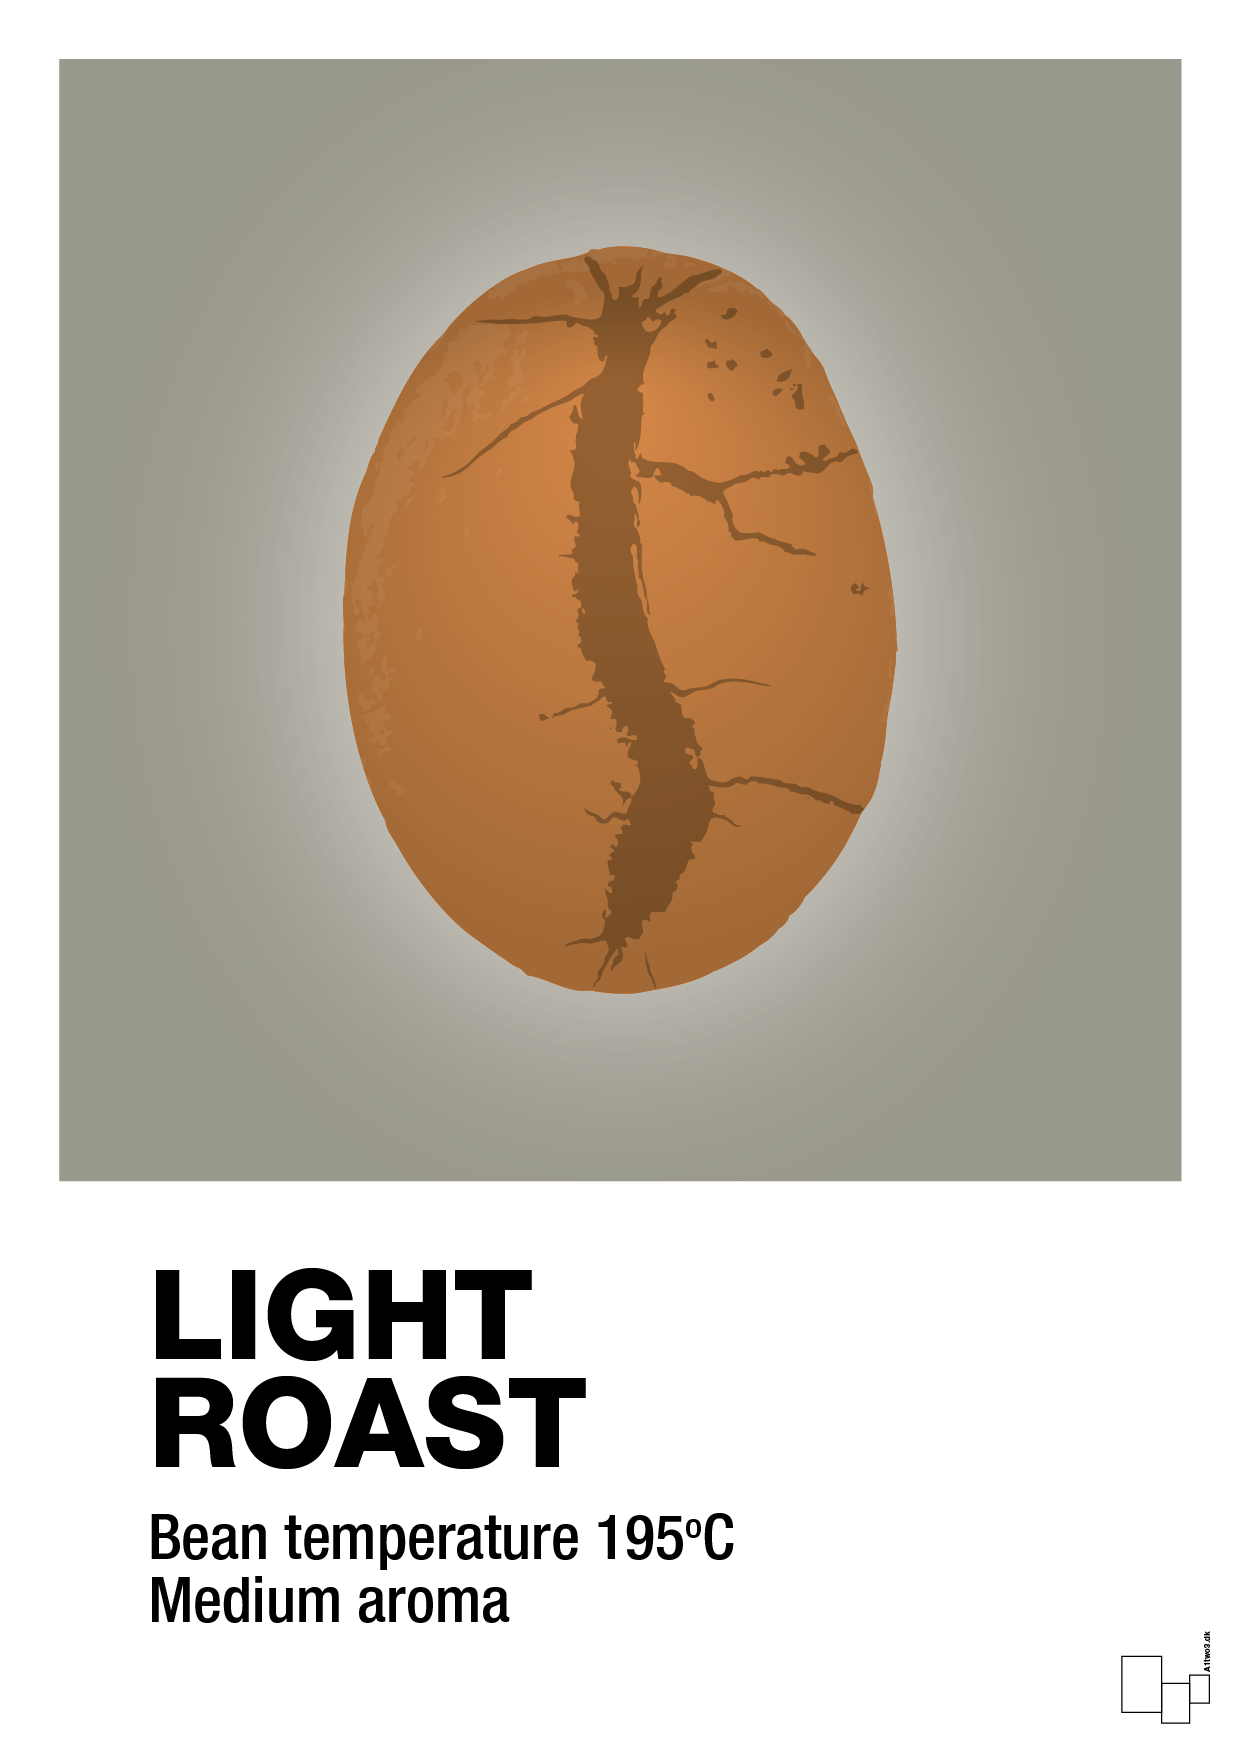 light roast - Plakat med Mad & Drikke i Battleship Gray